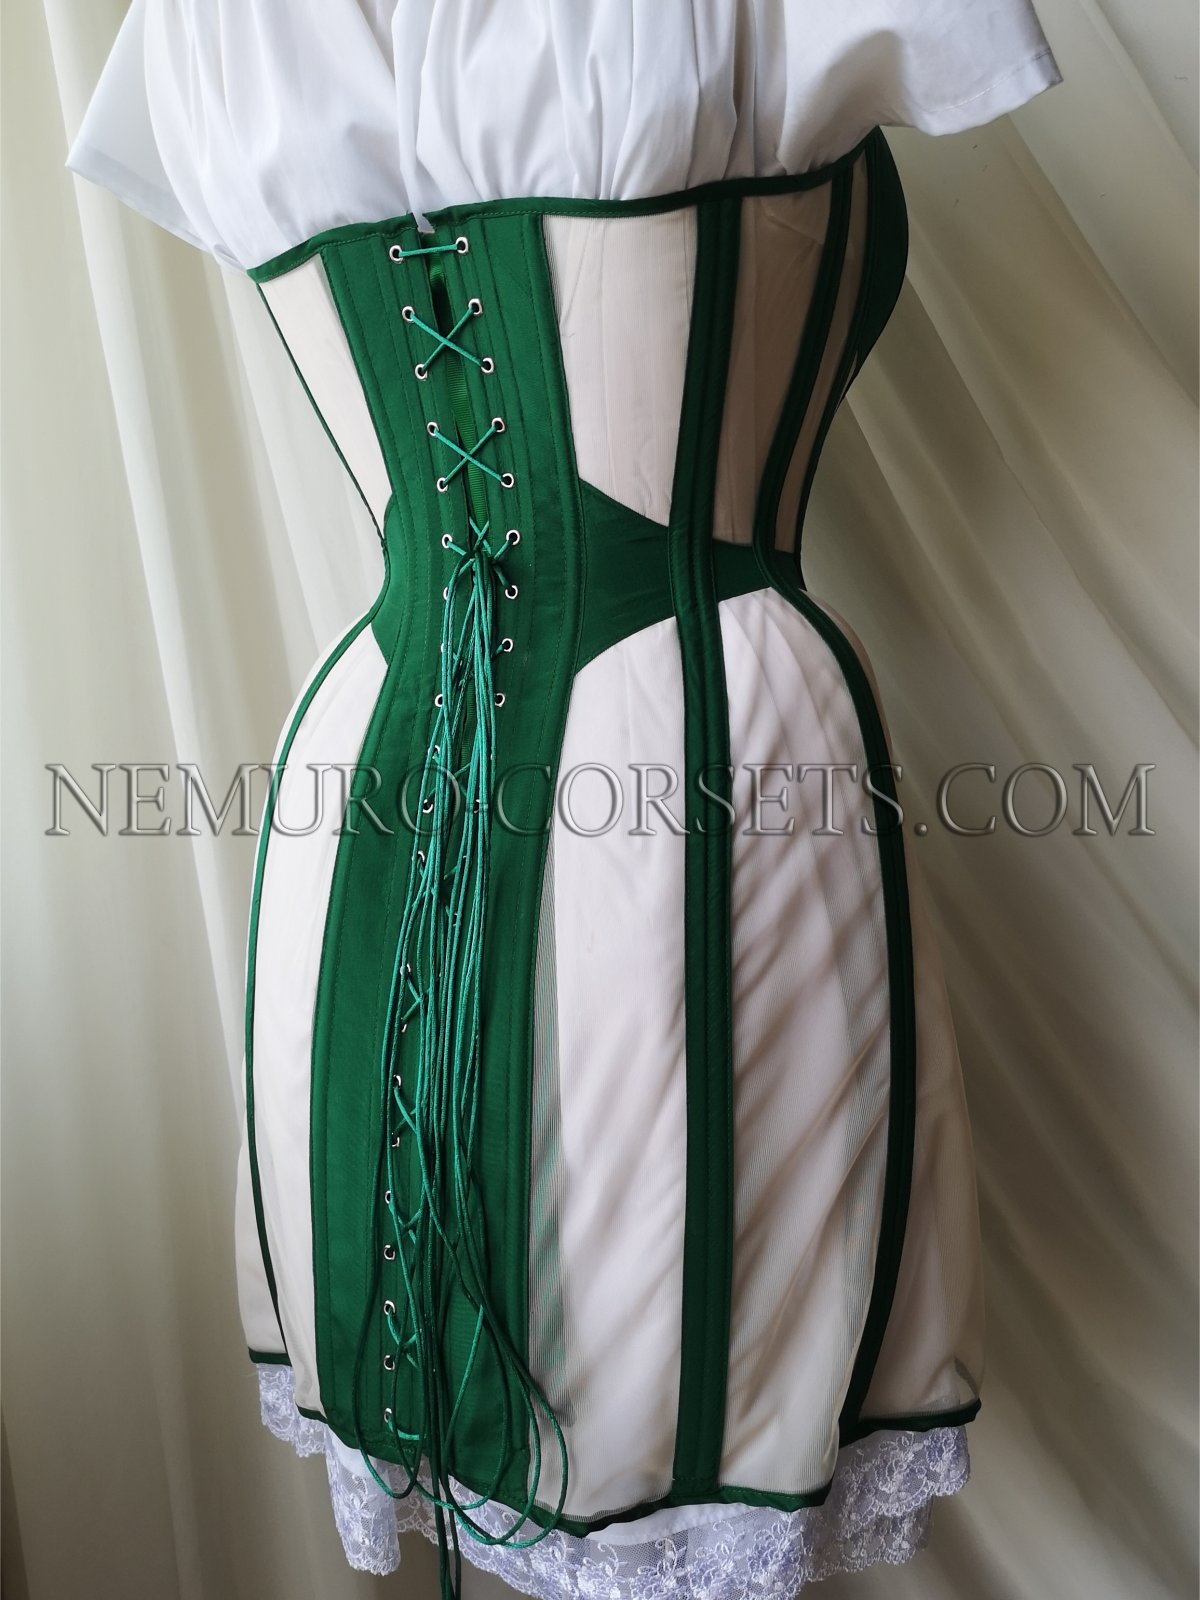 https://nemuro-corsets.com/cdn/shop/products/IMG_20220604_133511_1024x1024@2x.jpg?v=1663148235